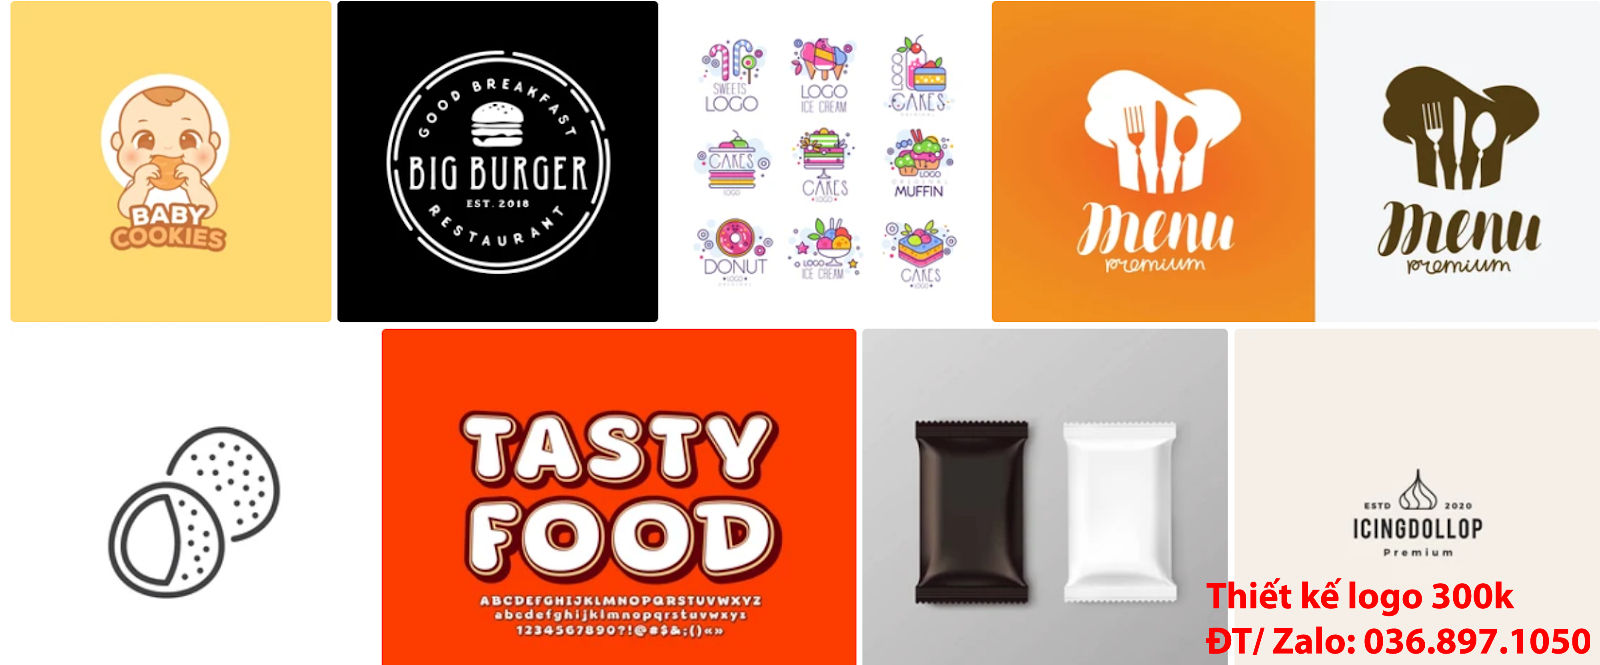 Dịch vụ nhận làm thiết kế logo đẹp ăn vặt sáng tạo chất lượng giá rẻ tại Tp Hồ Chí Minh